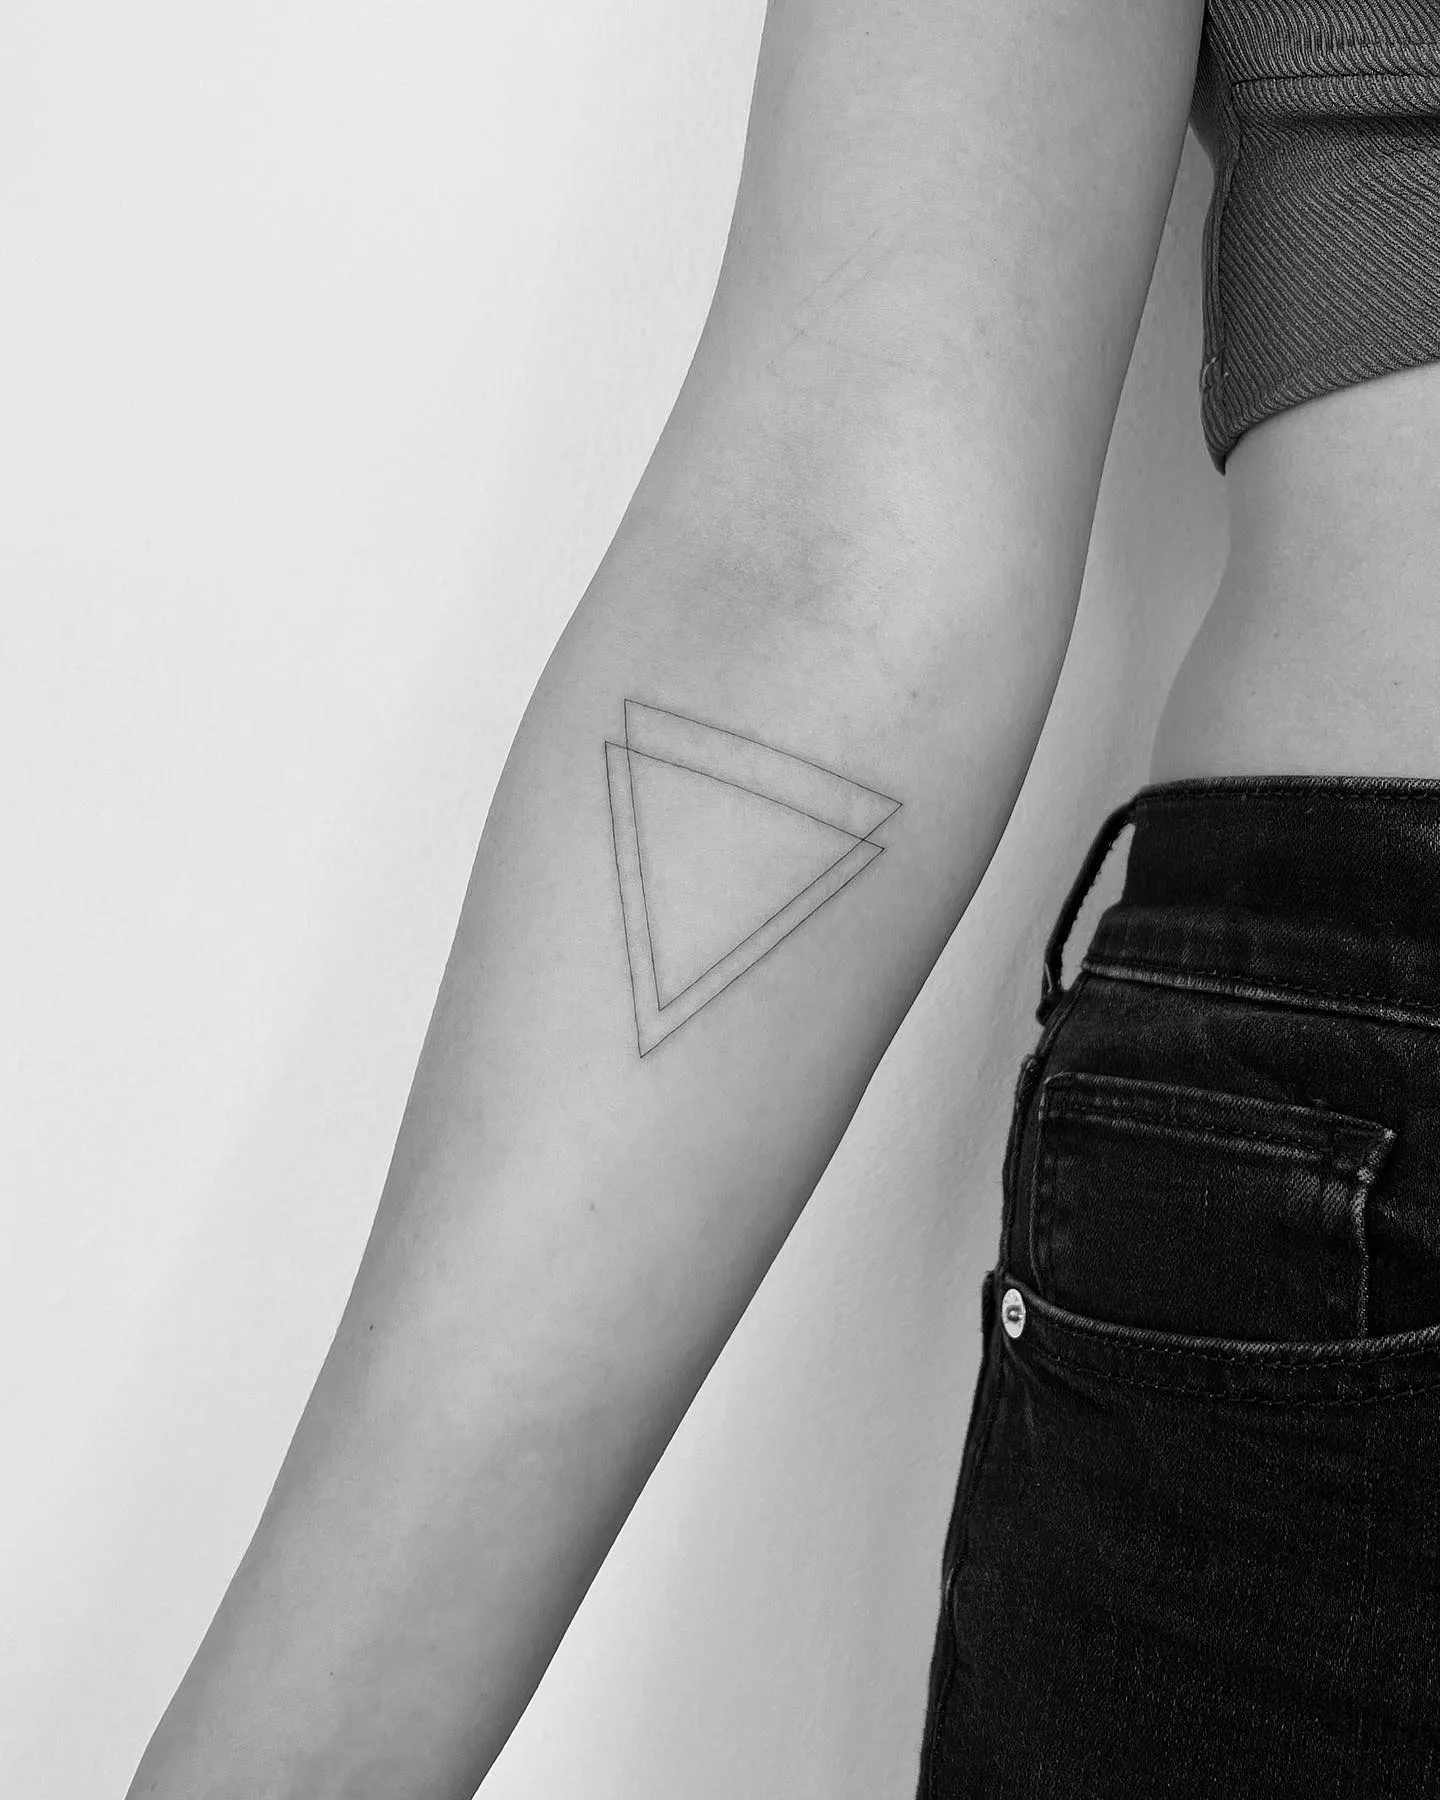 Sleek Double Triangle Tattoo on Forearm